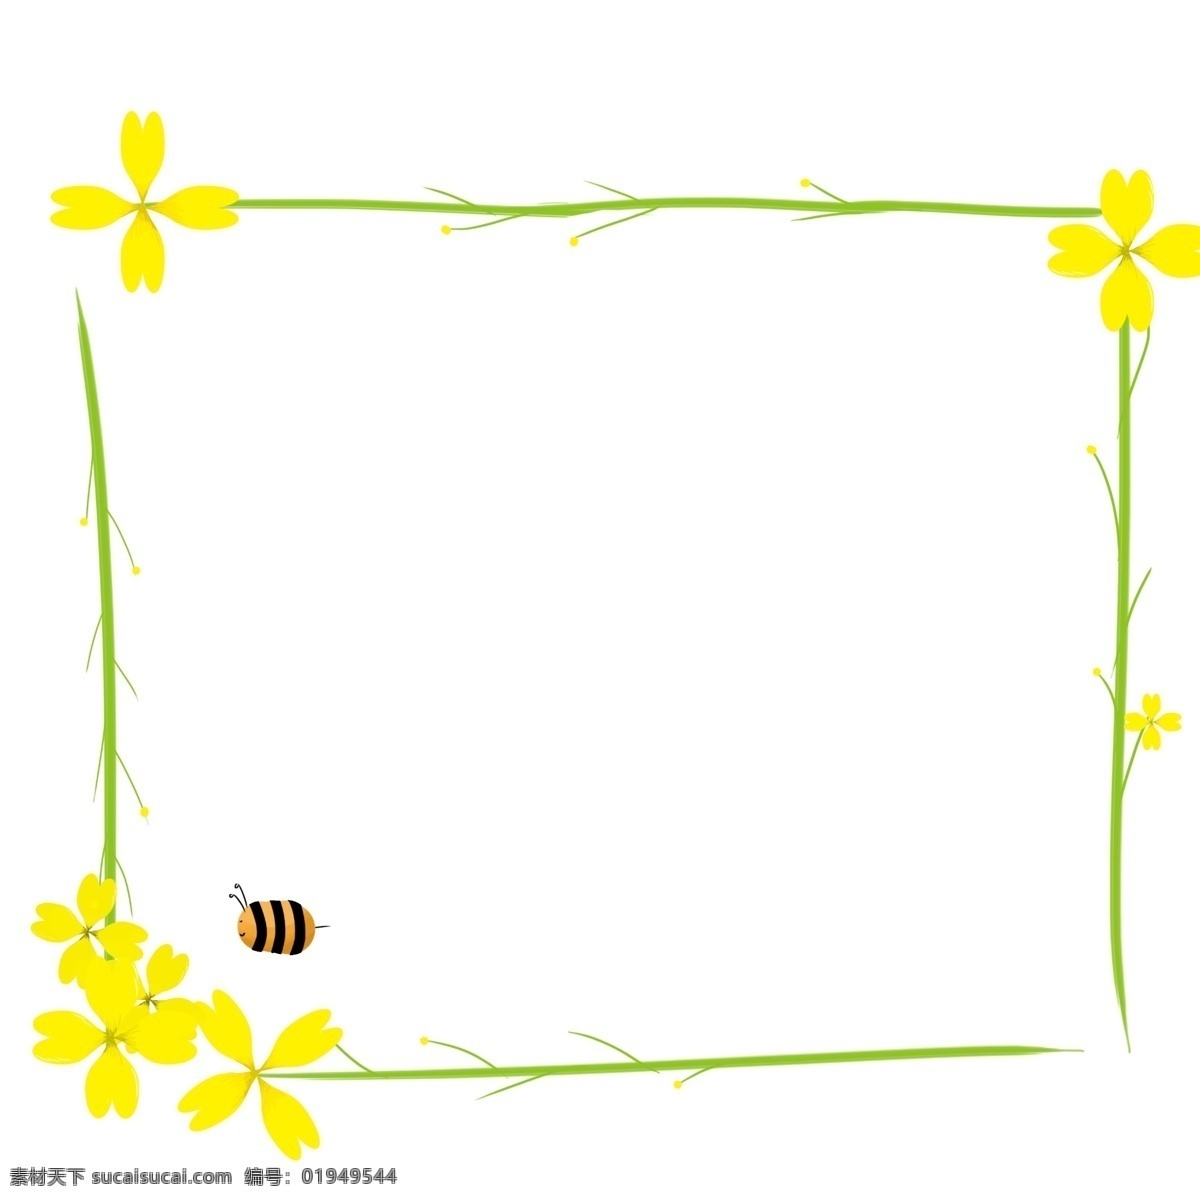 油菜花 蜜蜂 插画 黄色的油菜花 漂亮的油菜花 黄色的蜜蜂 创意油菜花 油菜花插画 春季油菜花